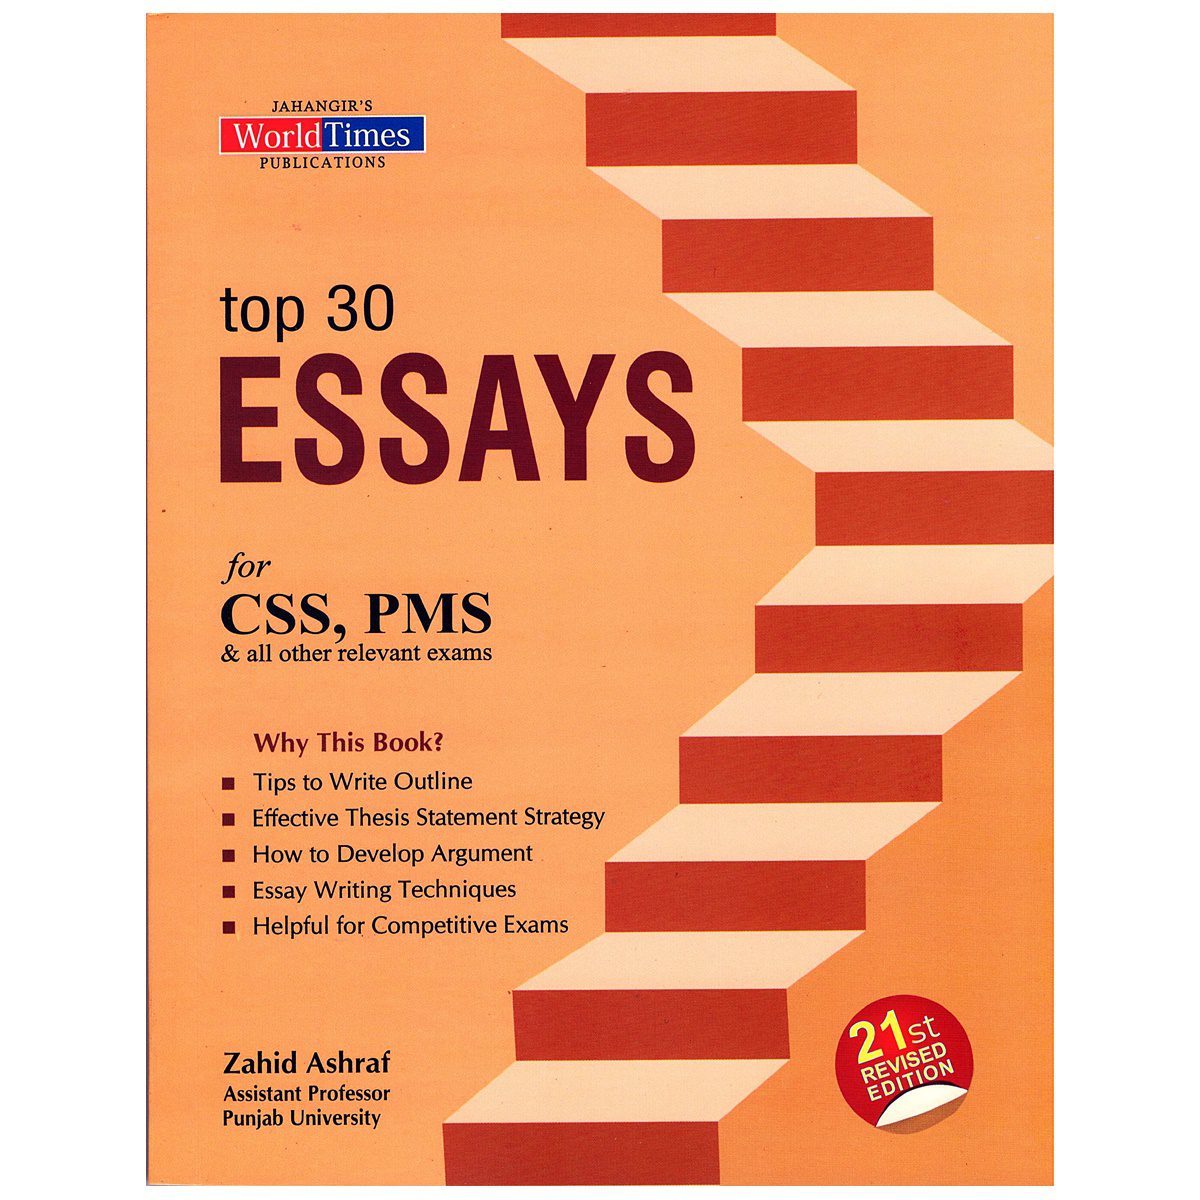 top 30 essays by zahid ashraf pdf